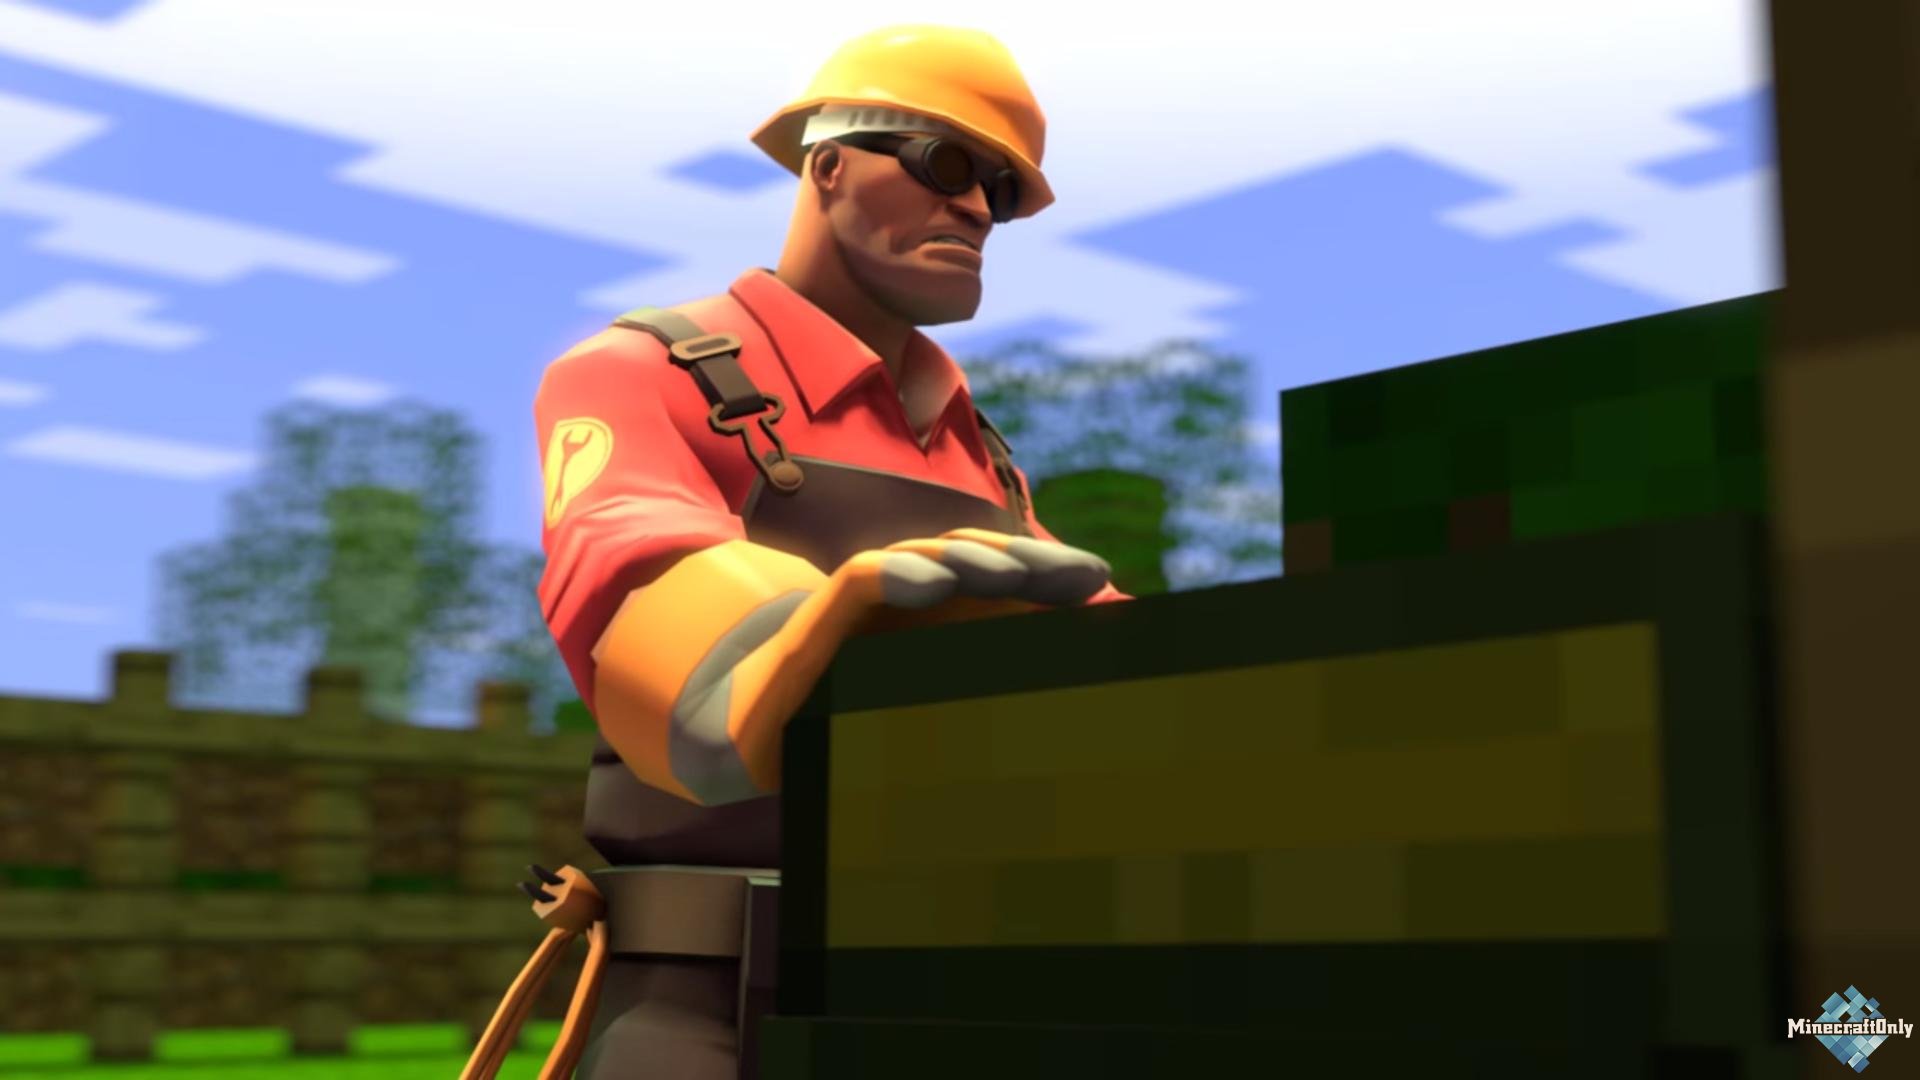 Engineer in minecraft - или сказка о том, как инженер в кубач попал